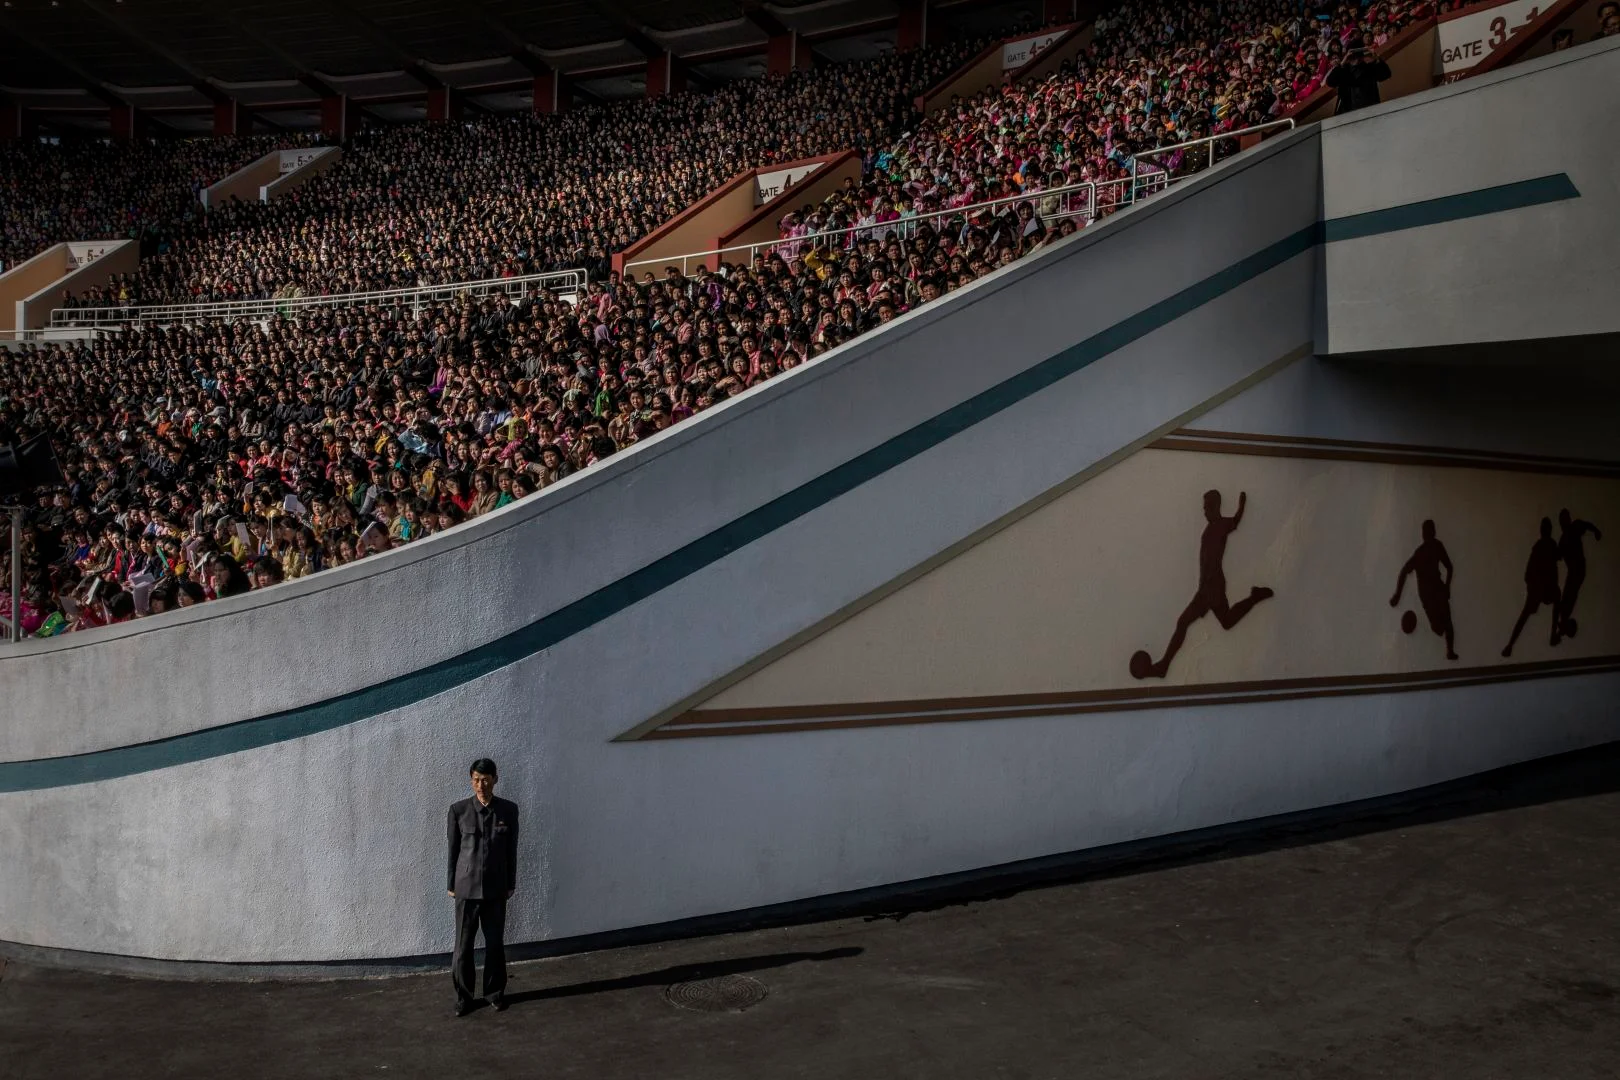 Una multitud espera el inicio de la maratón de Pyongyang en el estadio Kim Il-sung, mientras que un oficial vigila la salida.